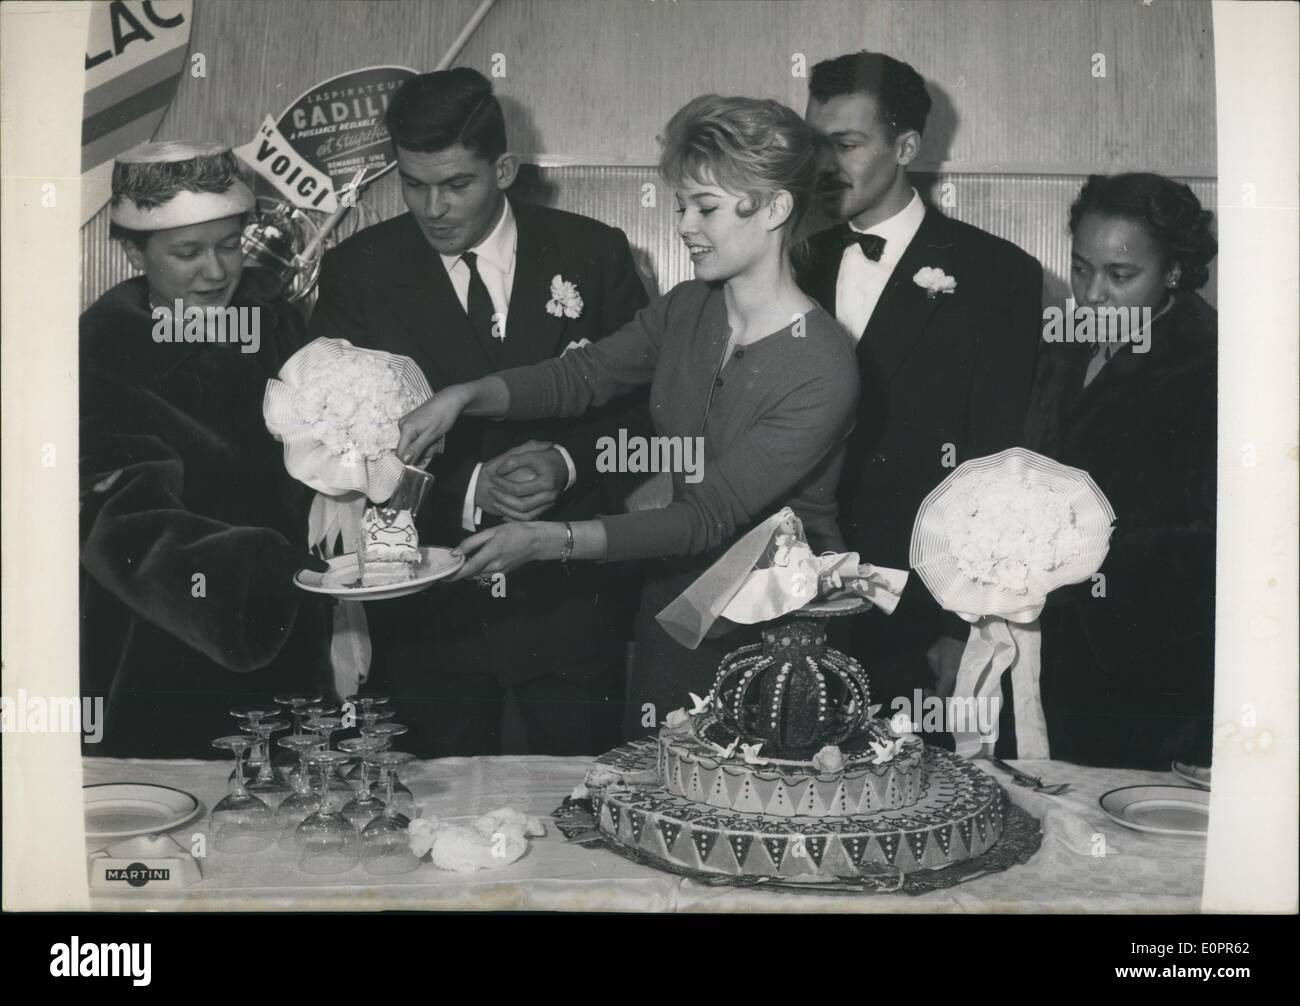 11 novembre 1956 - Brigitte Bardot joue vives : à l'occasion de la première du nouveau film ''La mariee etait trop belle'' (titre français qui signifie ''La mariée était trop beau) avec Brigitte Bardot, célèbre actrice écran reçu sur la scène du cinéma -deux nouveaux mariés qui elle a présenté avec des poupées et un gâteau. Photo montre Brigitte Bardot avec le nouveau -les couples mariés,M. et Madame Gauthier (à gauche) et M.et Madame sinele. Banque D'Images